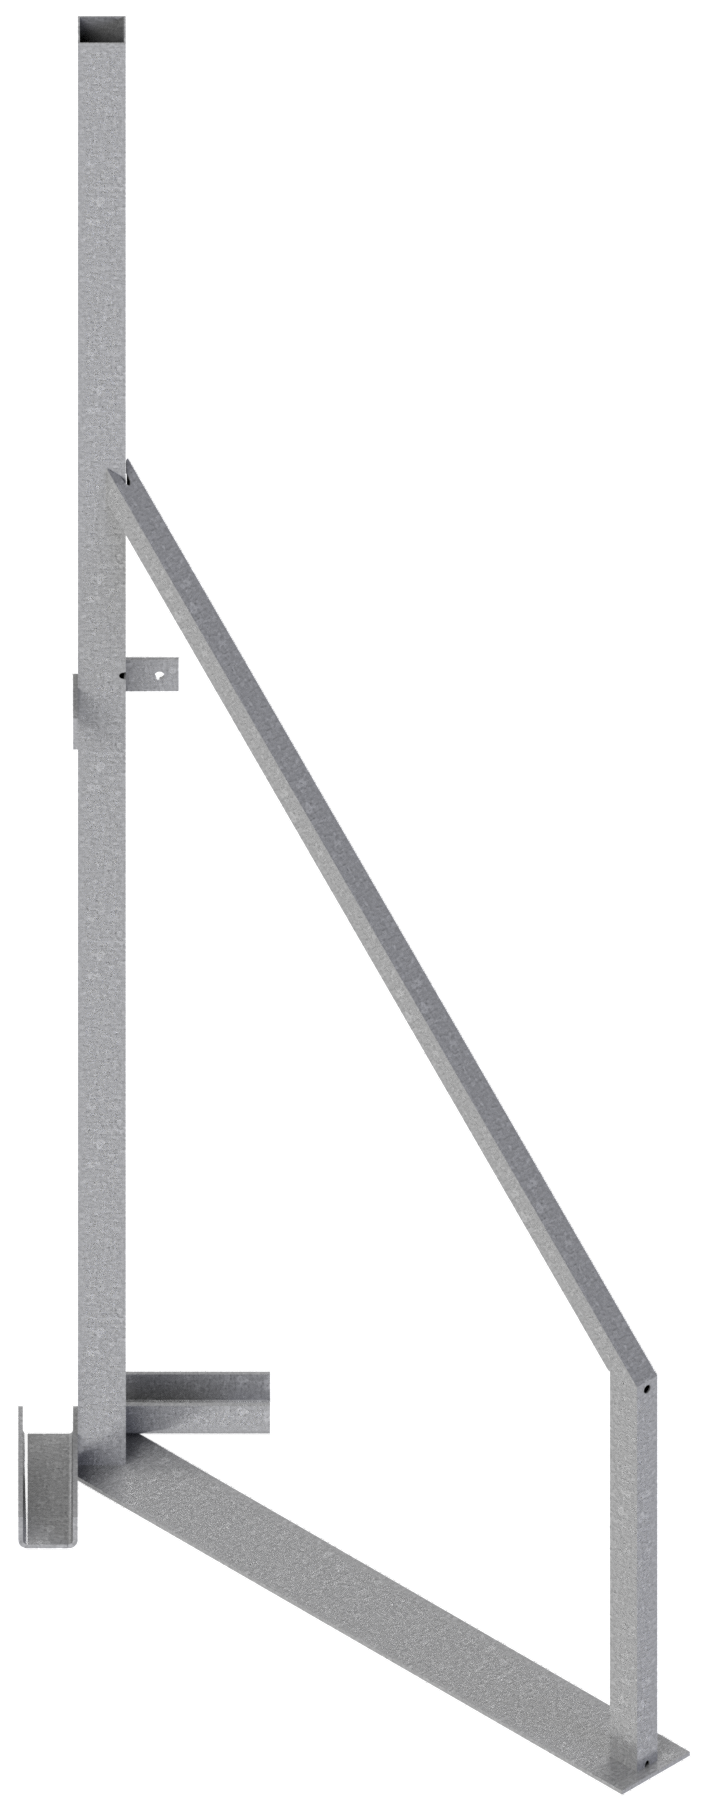 Modellbeispiel: Eck-Ständer für Holzbauzaun  (Art. 3b160-e)